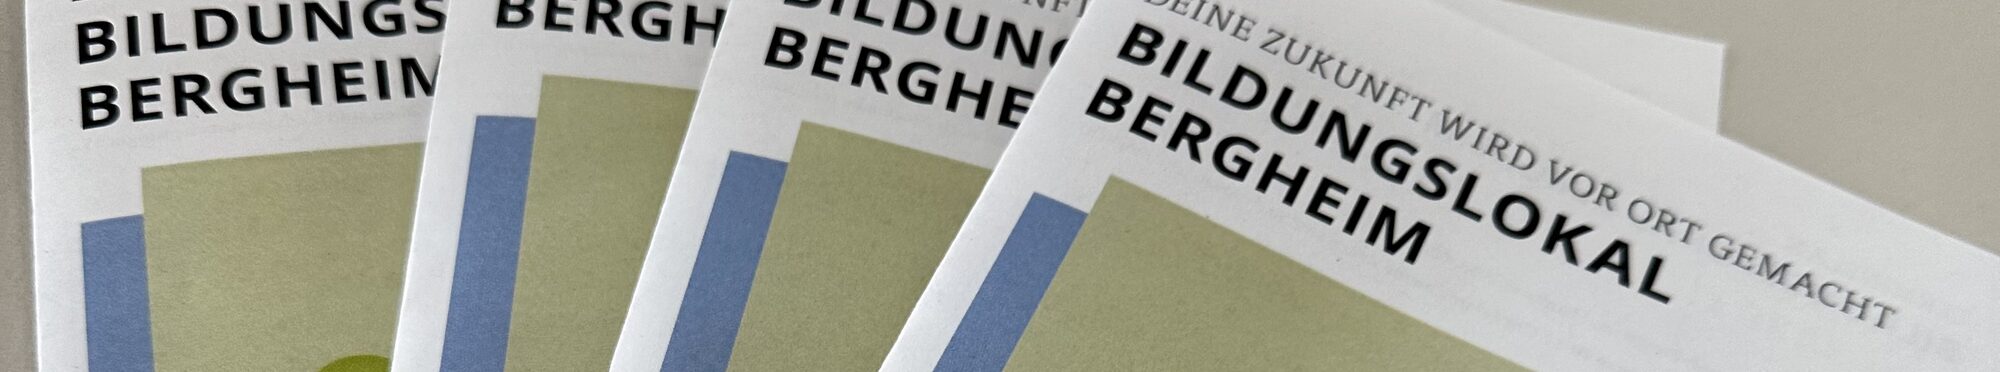 Broschüre "Bildungslokal Bergheim"